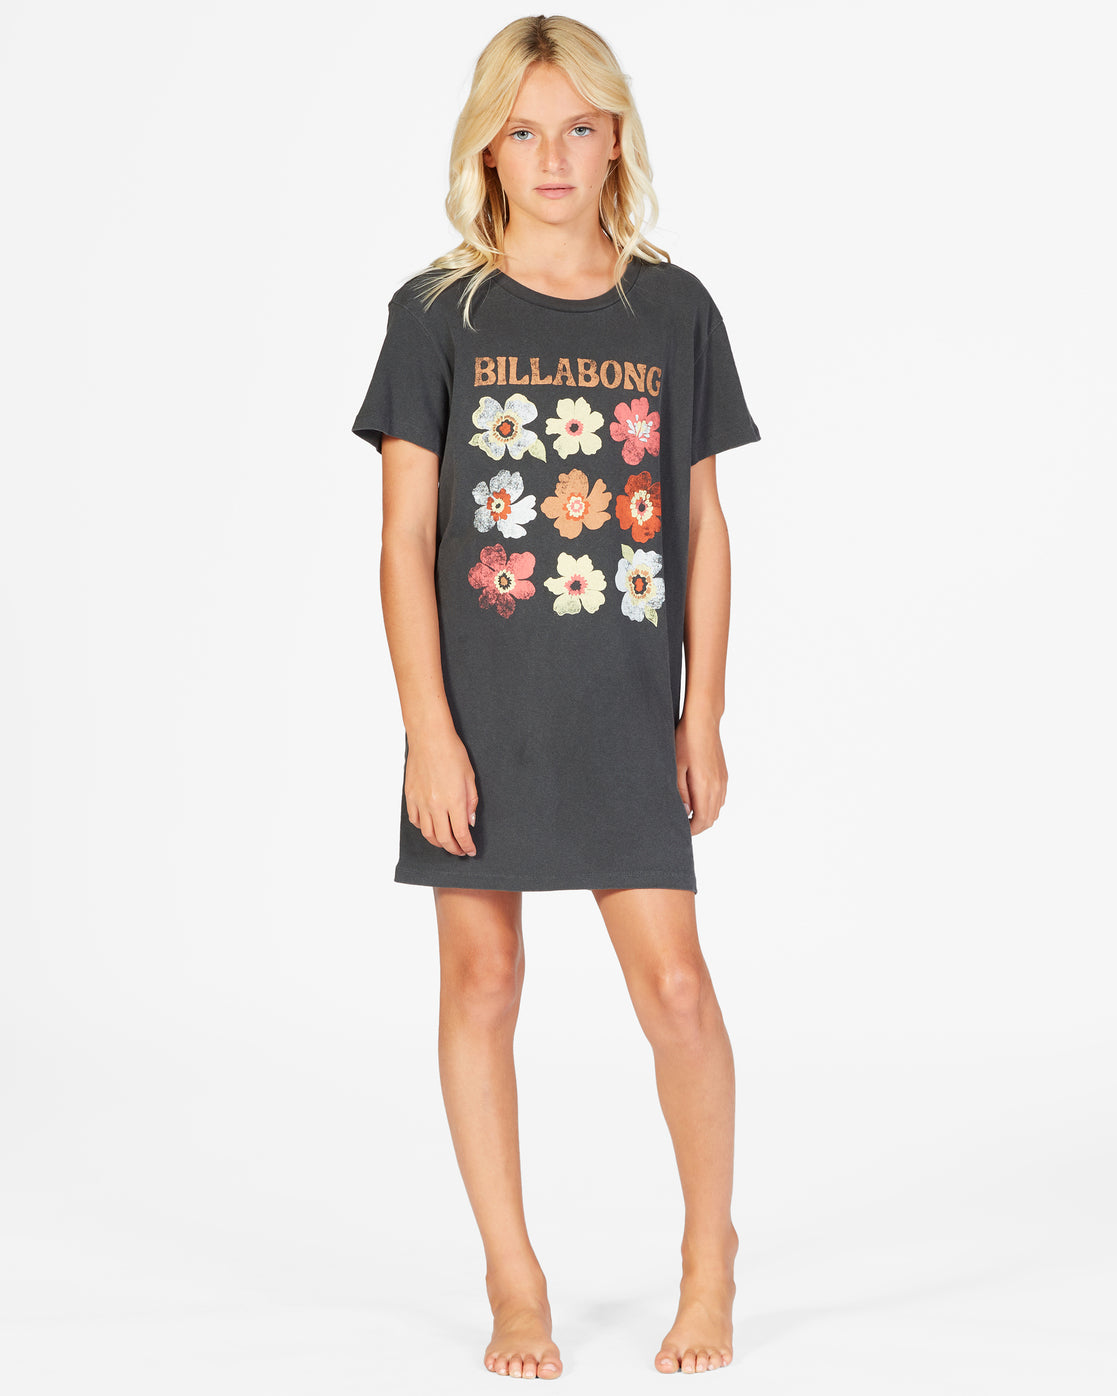 Girls' Keep It Beachy T-Shirt Dress - ABGKD00101